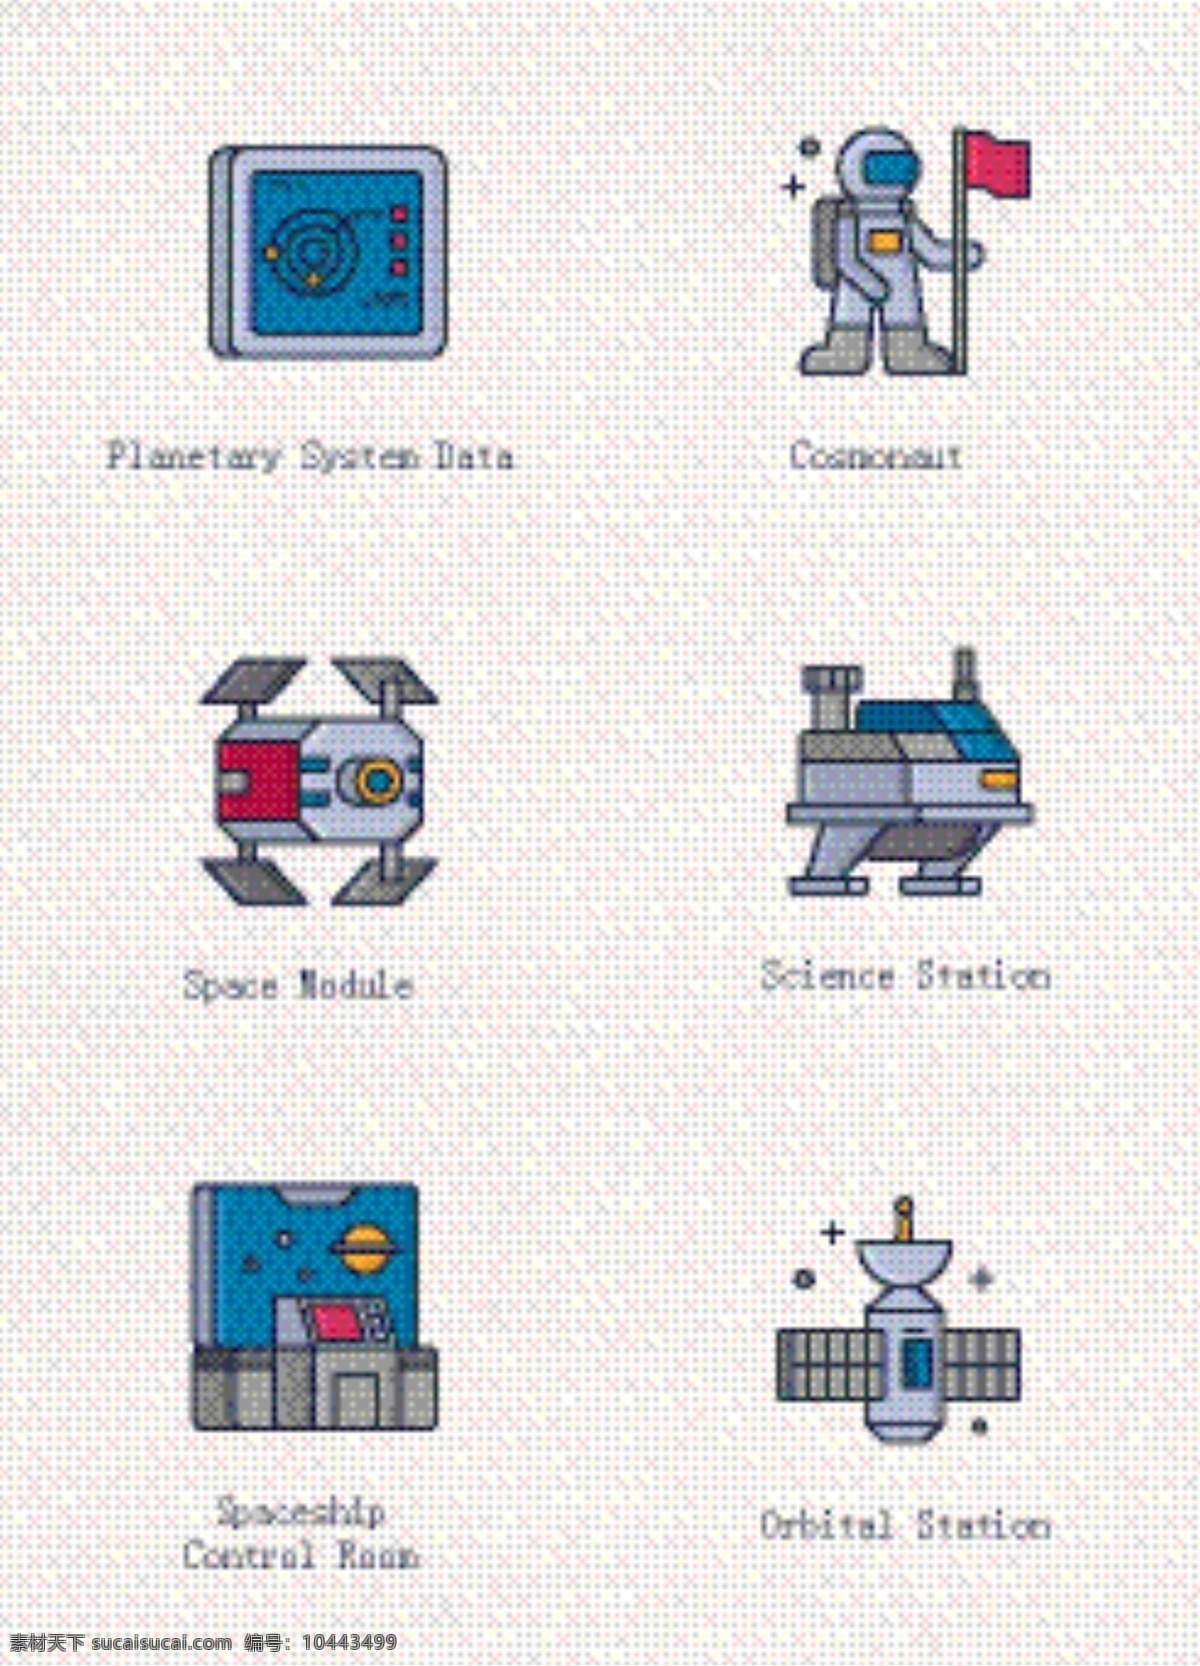 可爱 太空 元素 矢量 图标 设计素材 卡通 矢量图标 宇航员 轨道 太空元素 系统数据 太空模型 科学模型 天空 飞船 控制 站